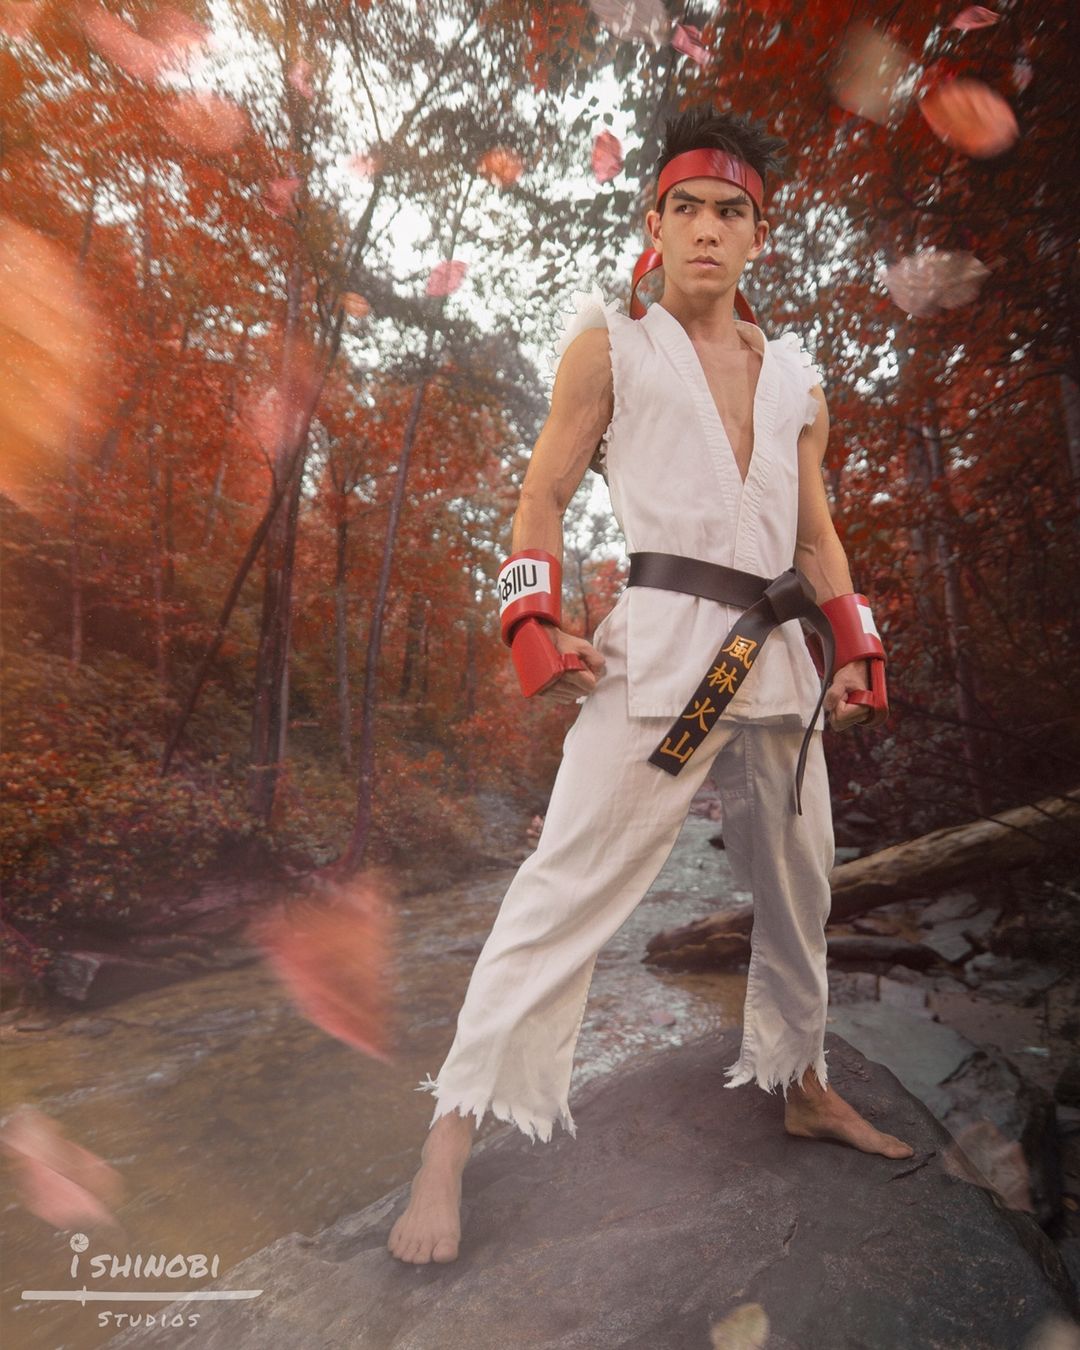 คอสเพลย์ริว Ryu จากเกม Street Fighter โดย DanHasegawa